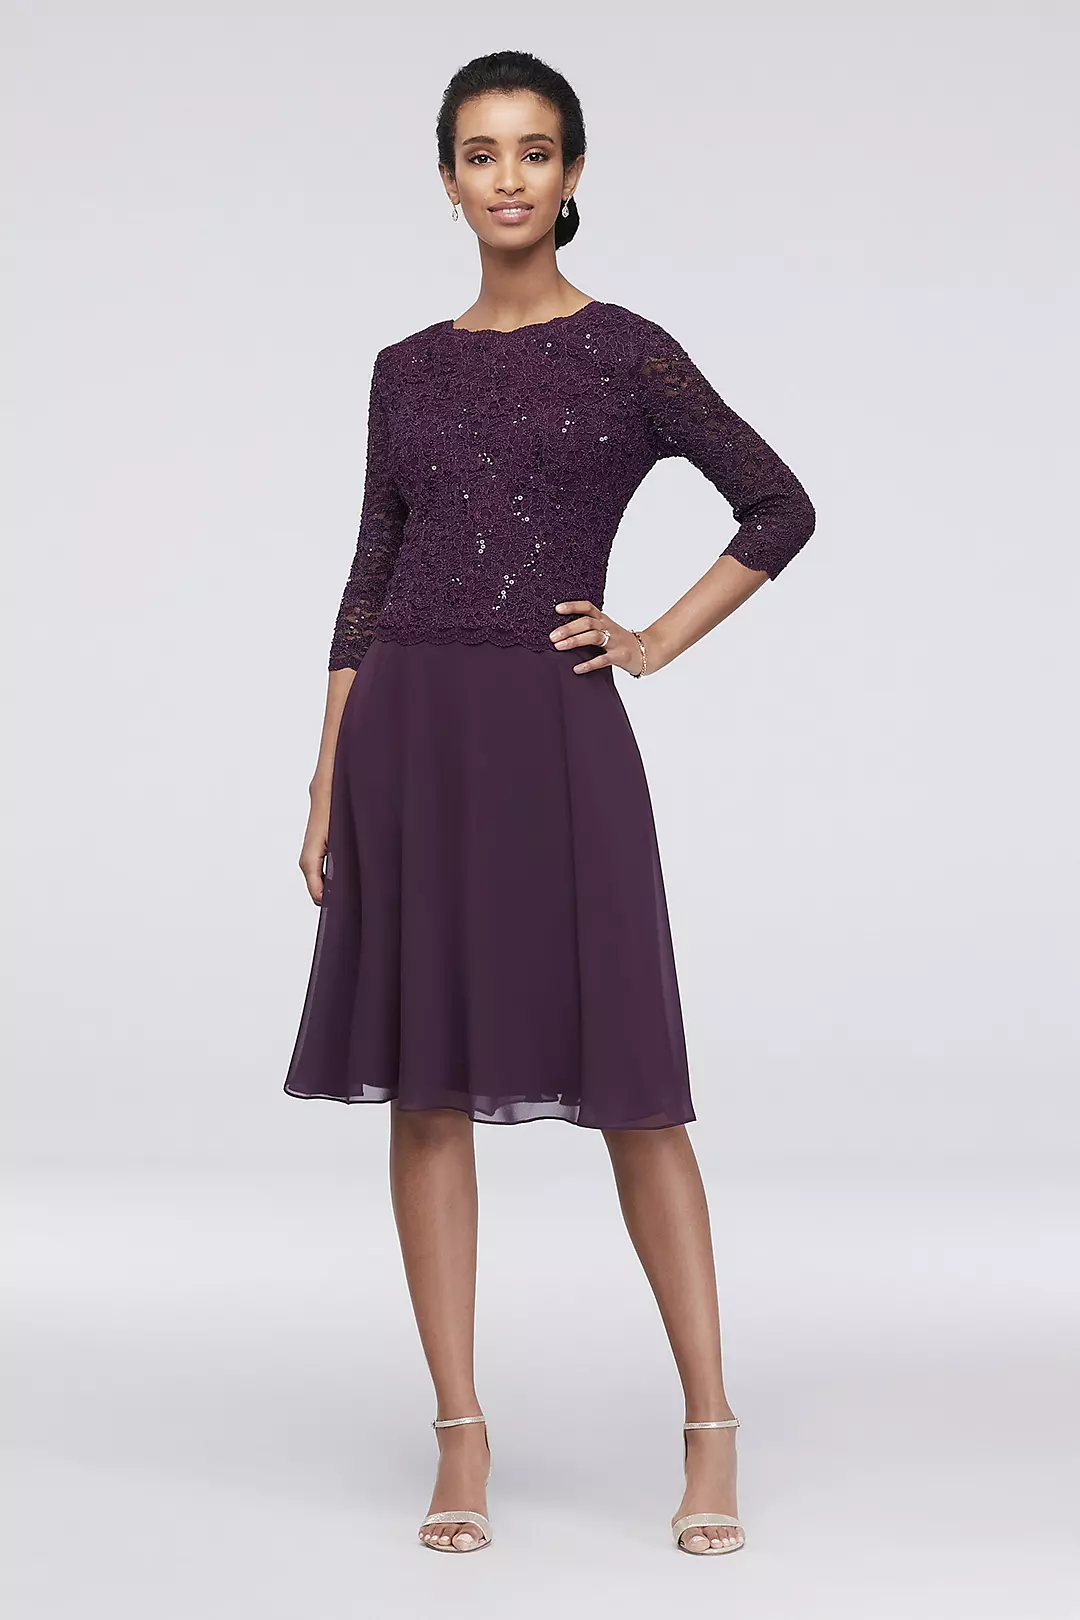 Sequin Lace Scoopneck Short A-Line Petite Dress